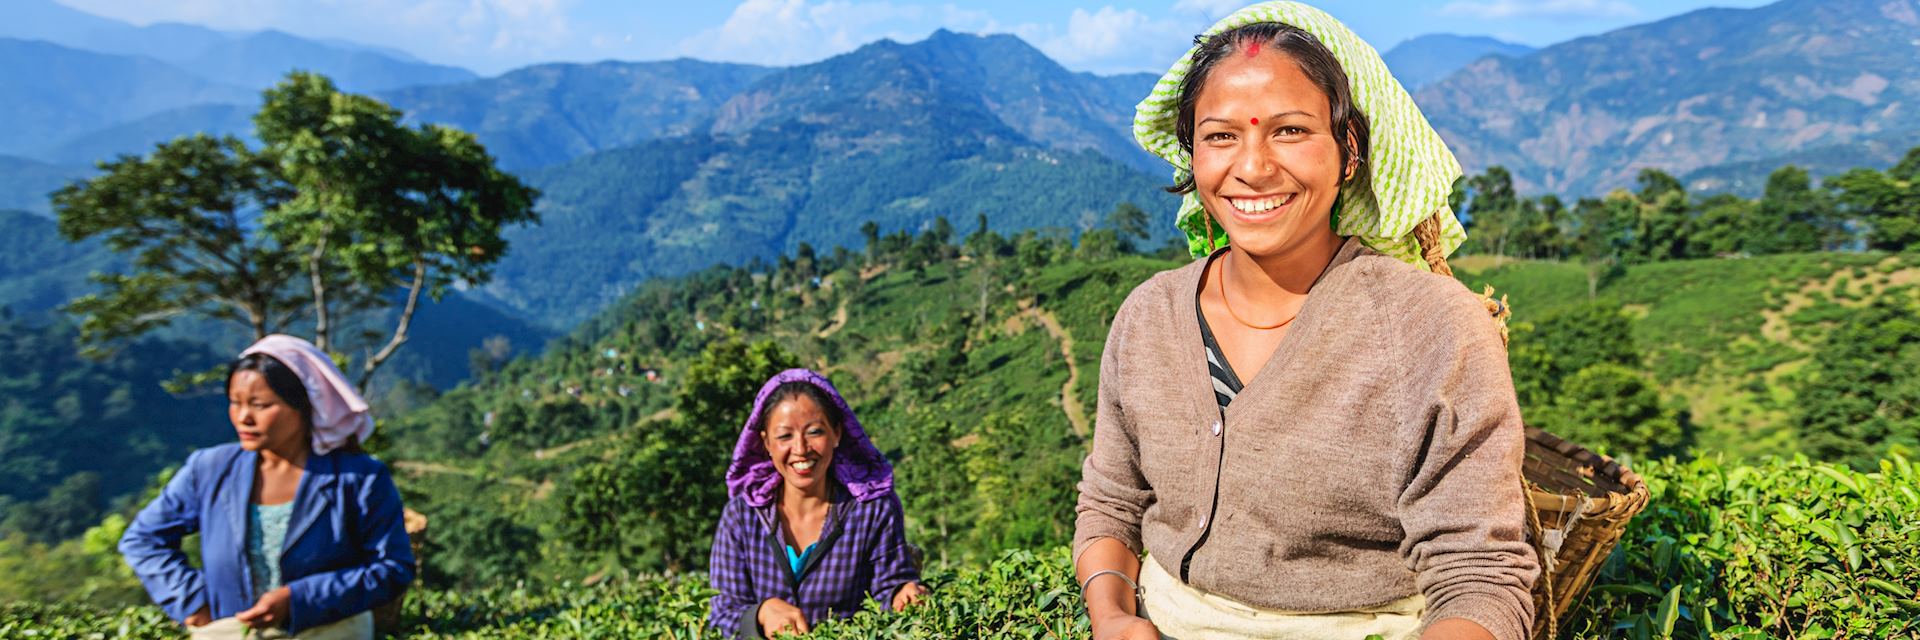 Tea pickers in Darjeeling